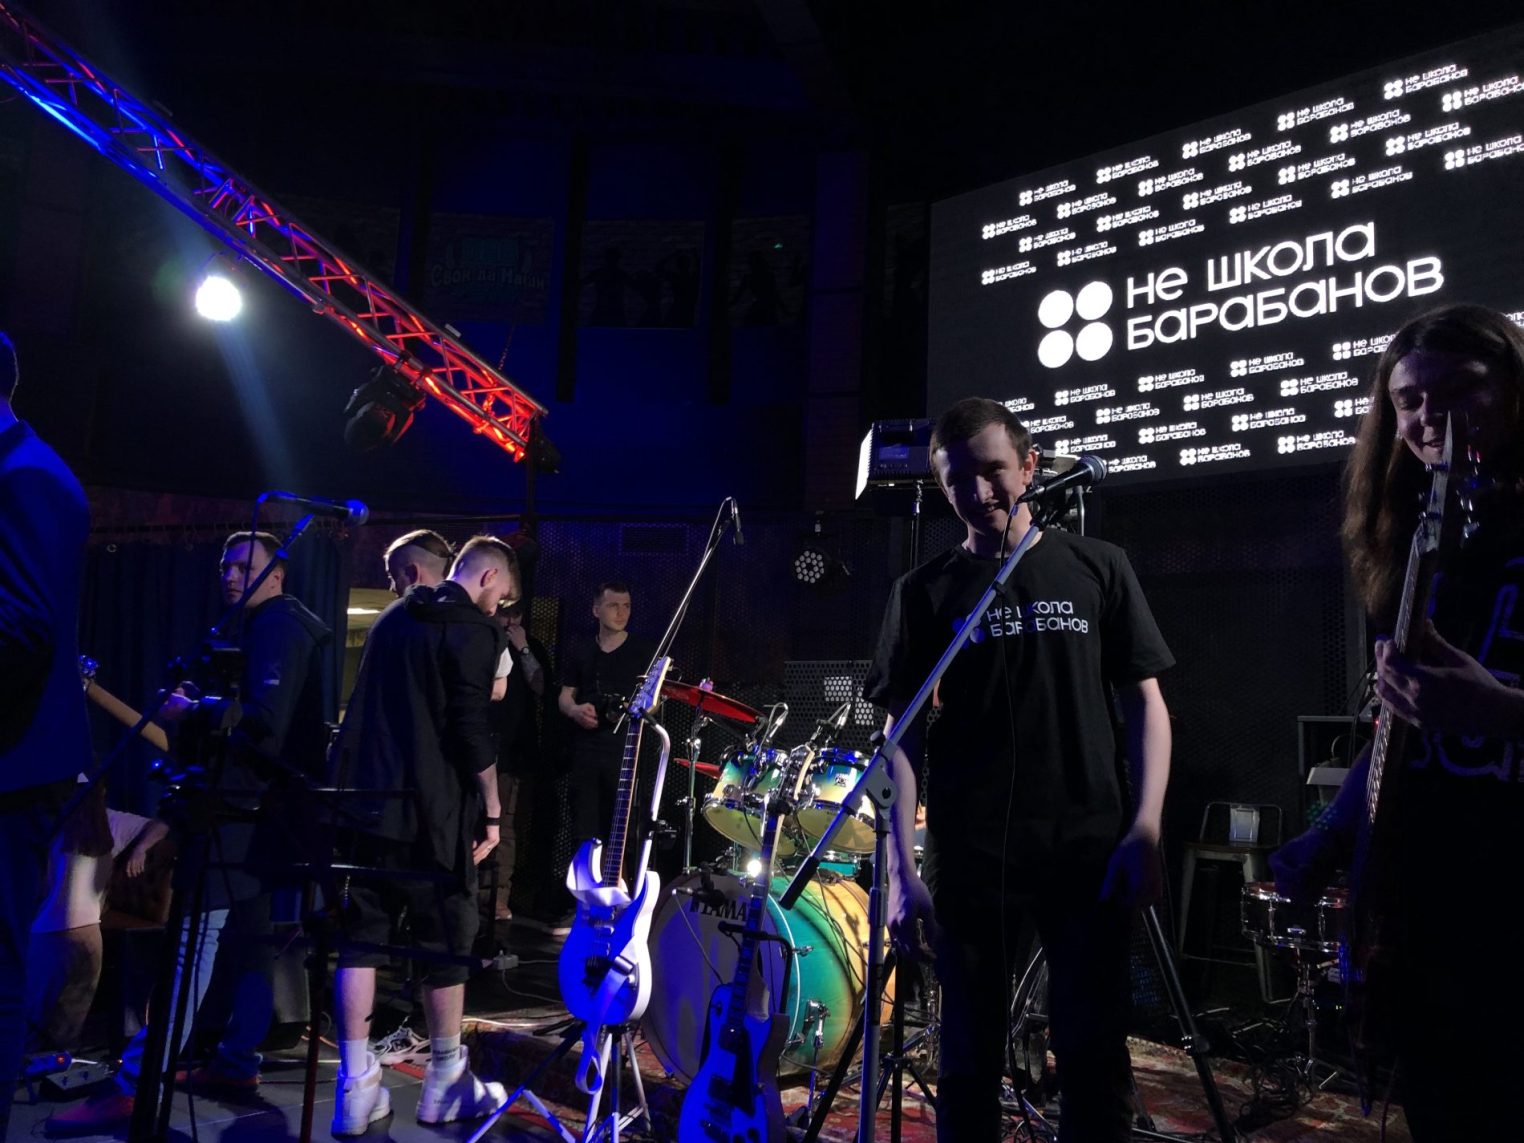 Неотчетный концерт "Не школы барабанов" отгремел в Костроме